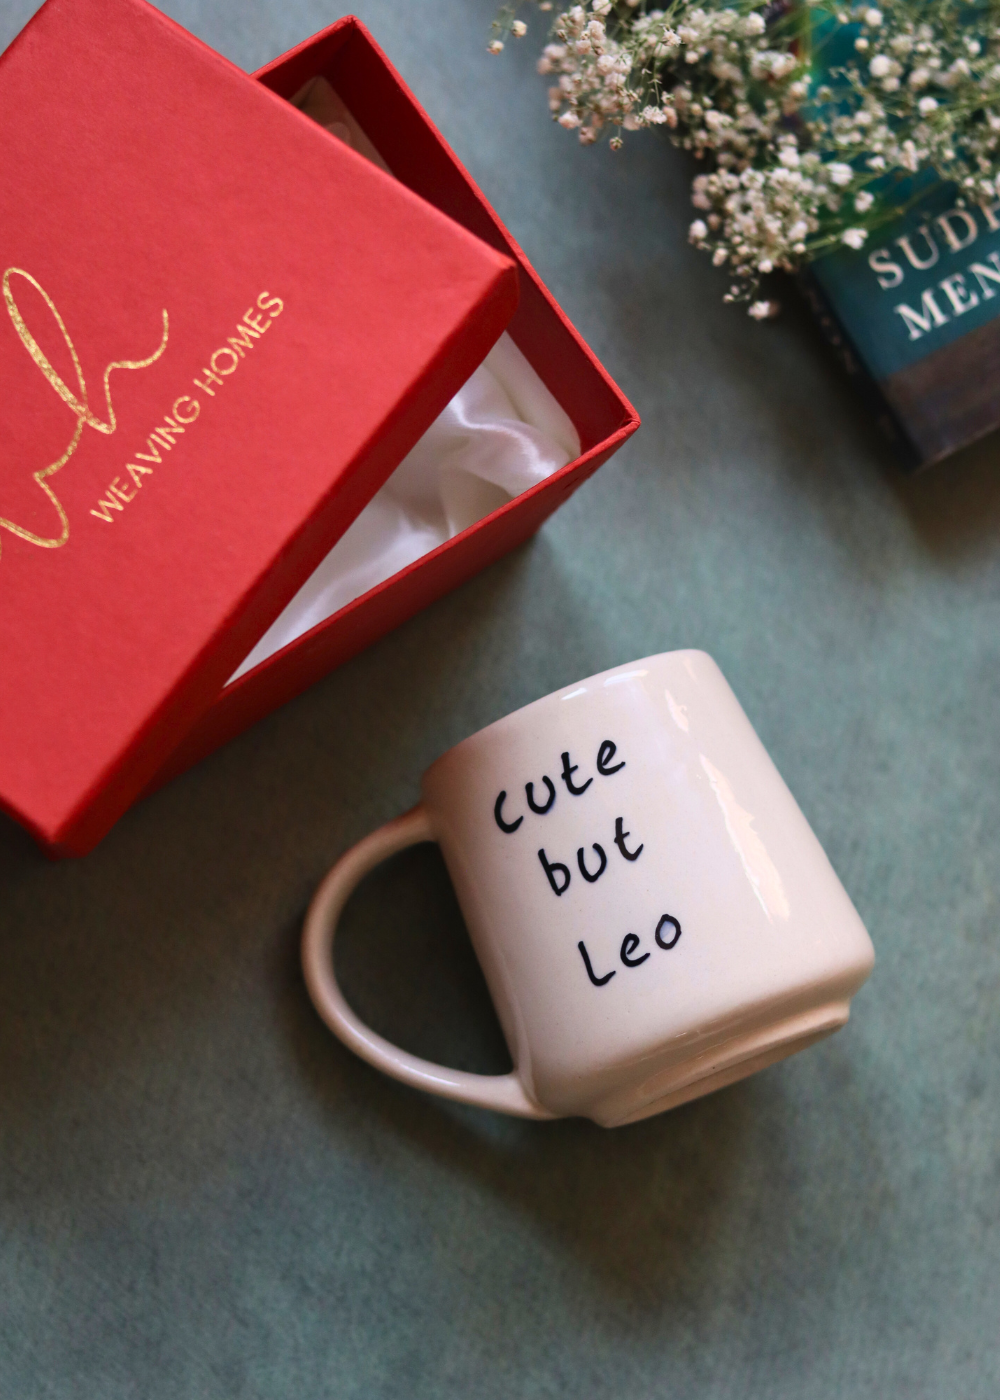 cute but leo mug in a gift box handmade in india